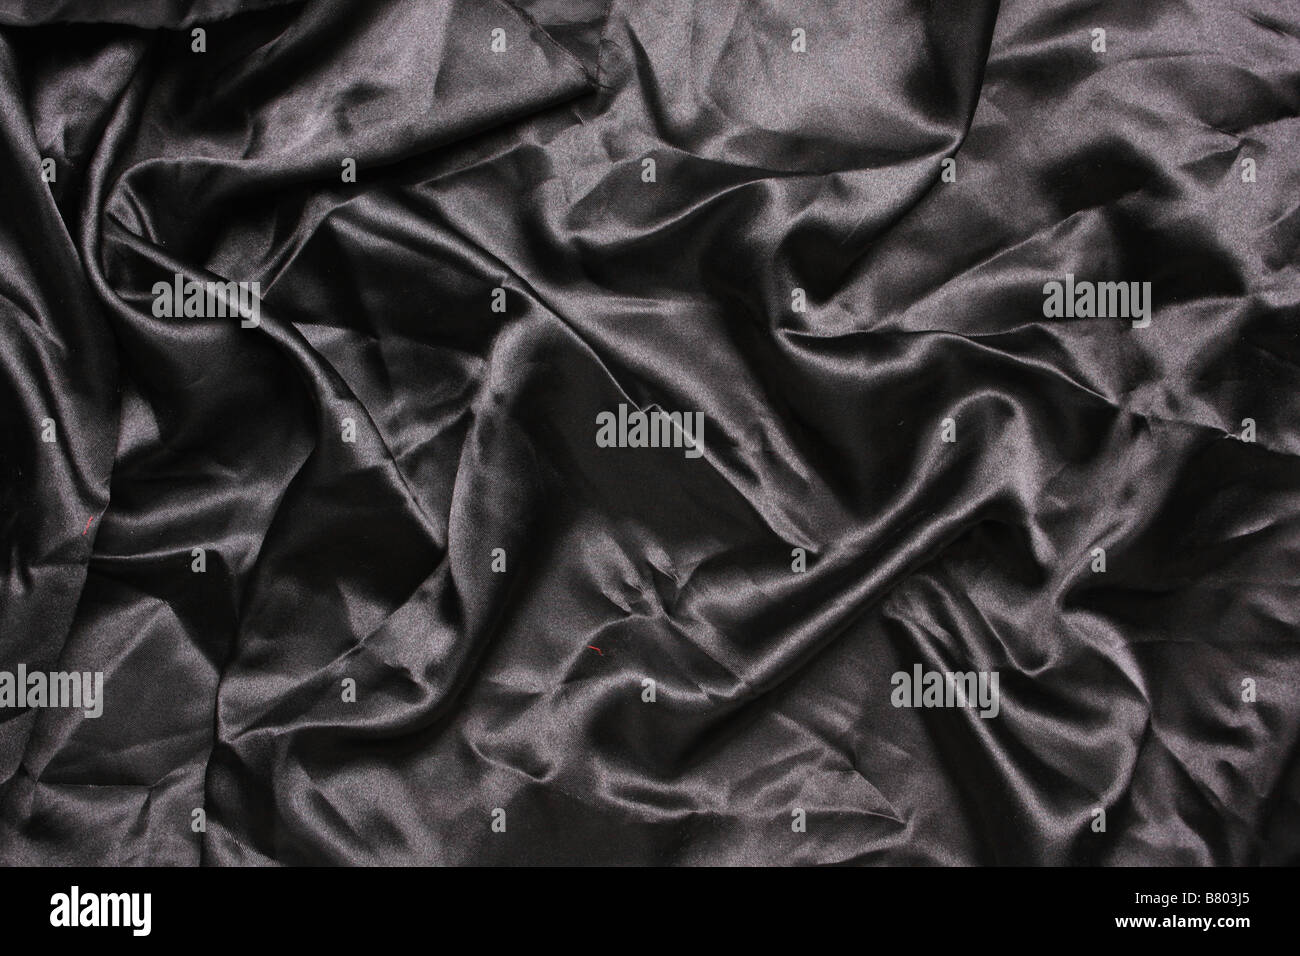 En satin de couleur noire en plongée des plis et replis de la création de toutes sortes de formes et ombres Banque D'Images